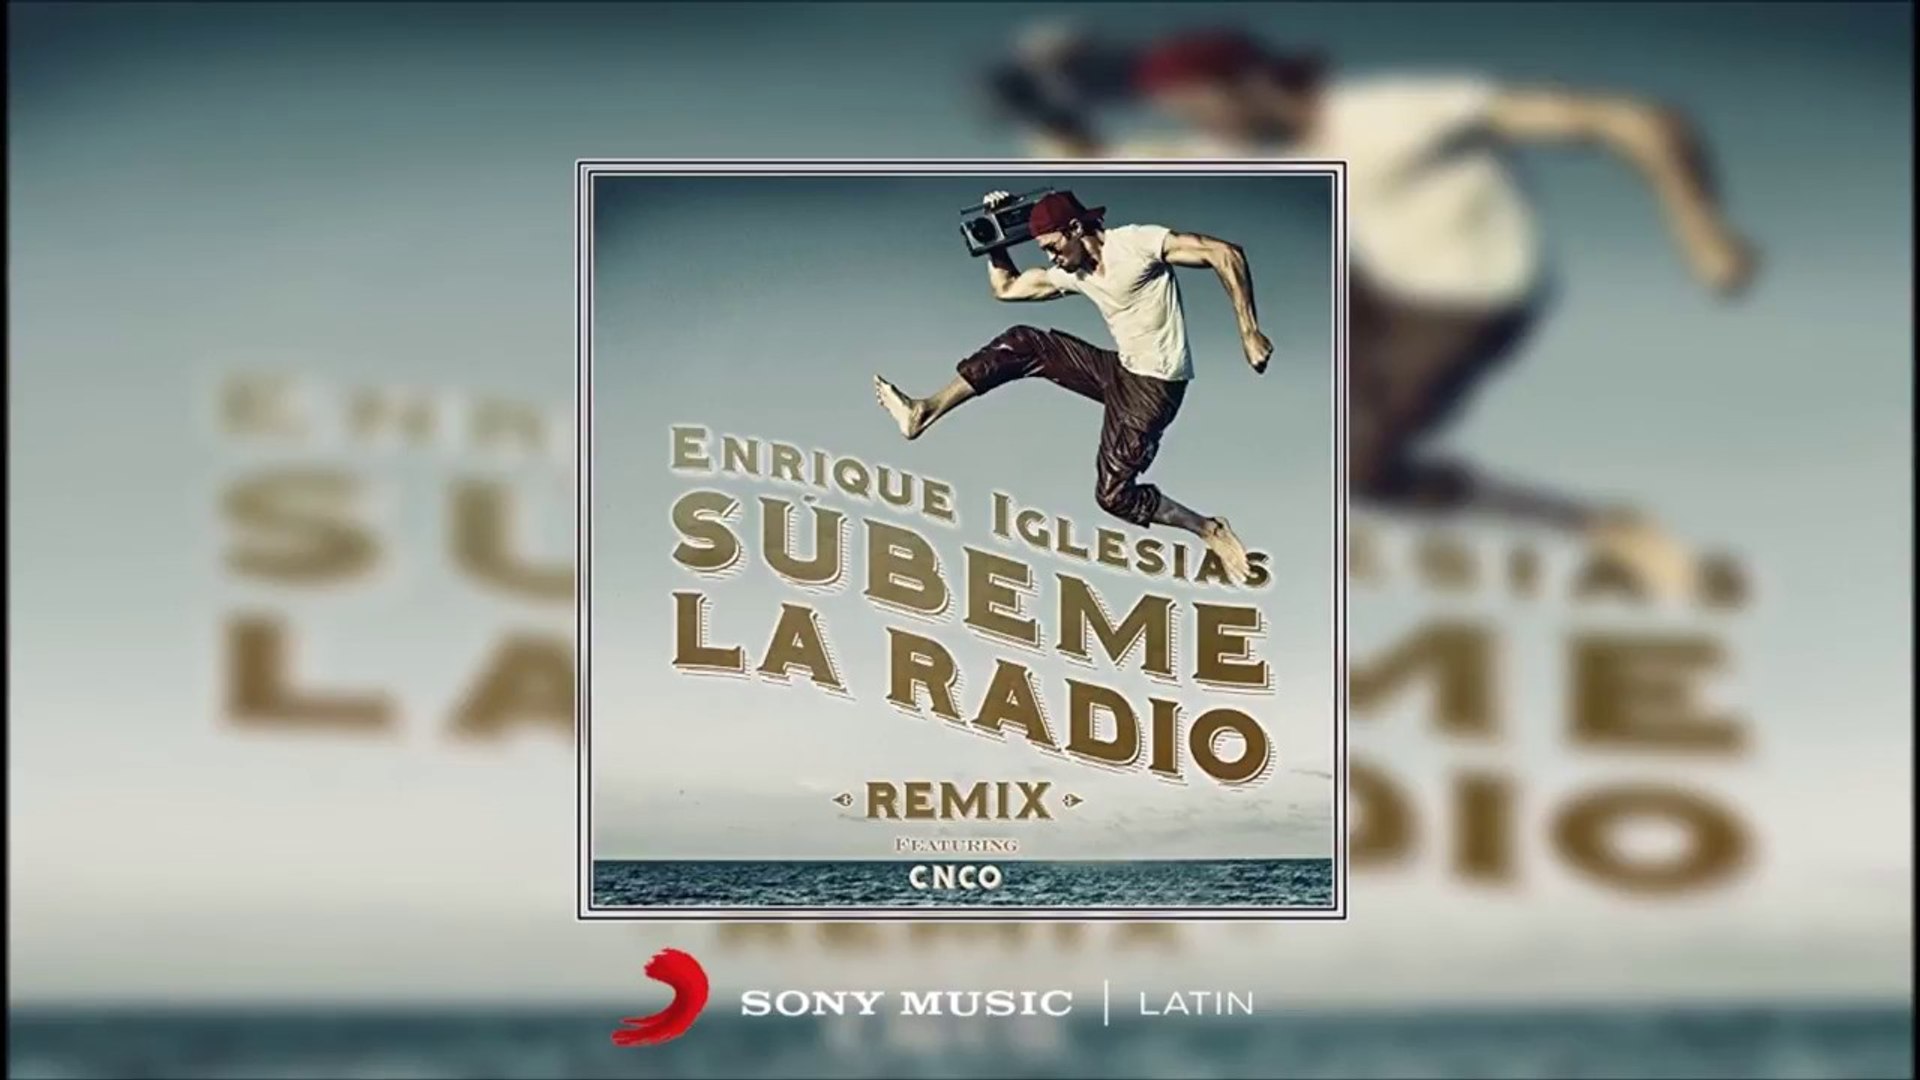 Descendencia para ver Cocinando Enrique Iglesias - Subeme La Radio ft. CNCO (Remix) - Vídeo Dailymotion